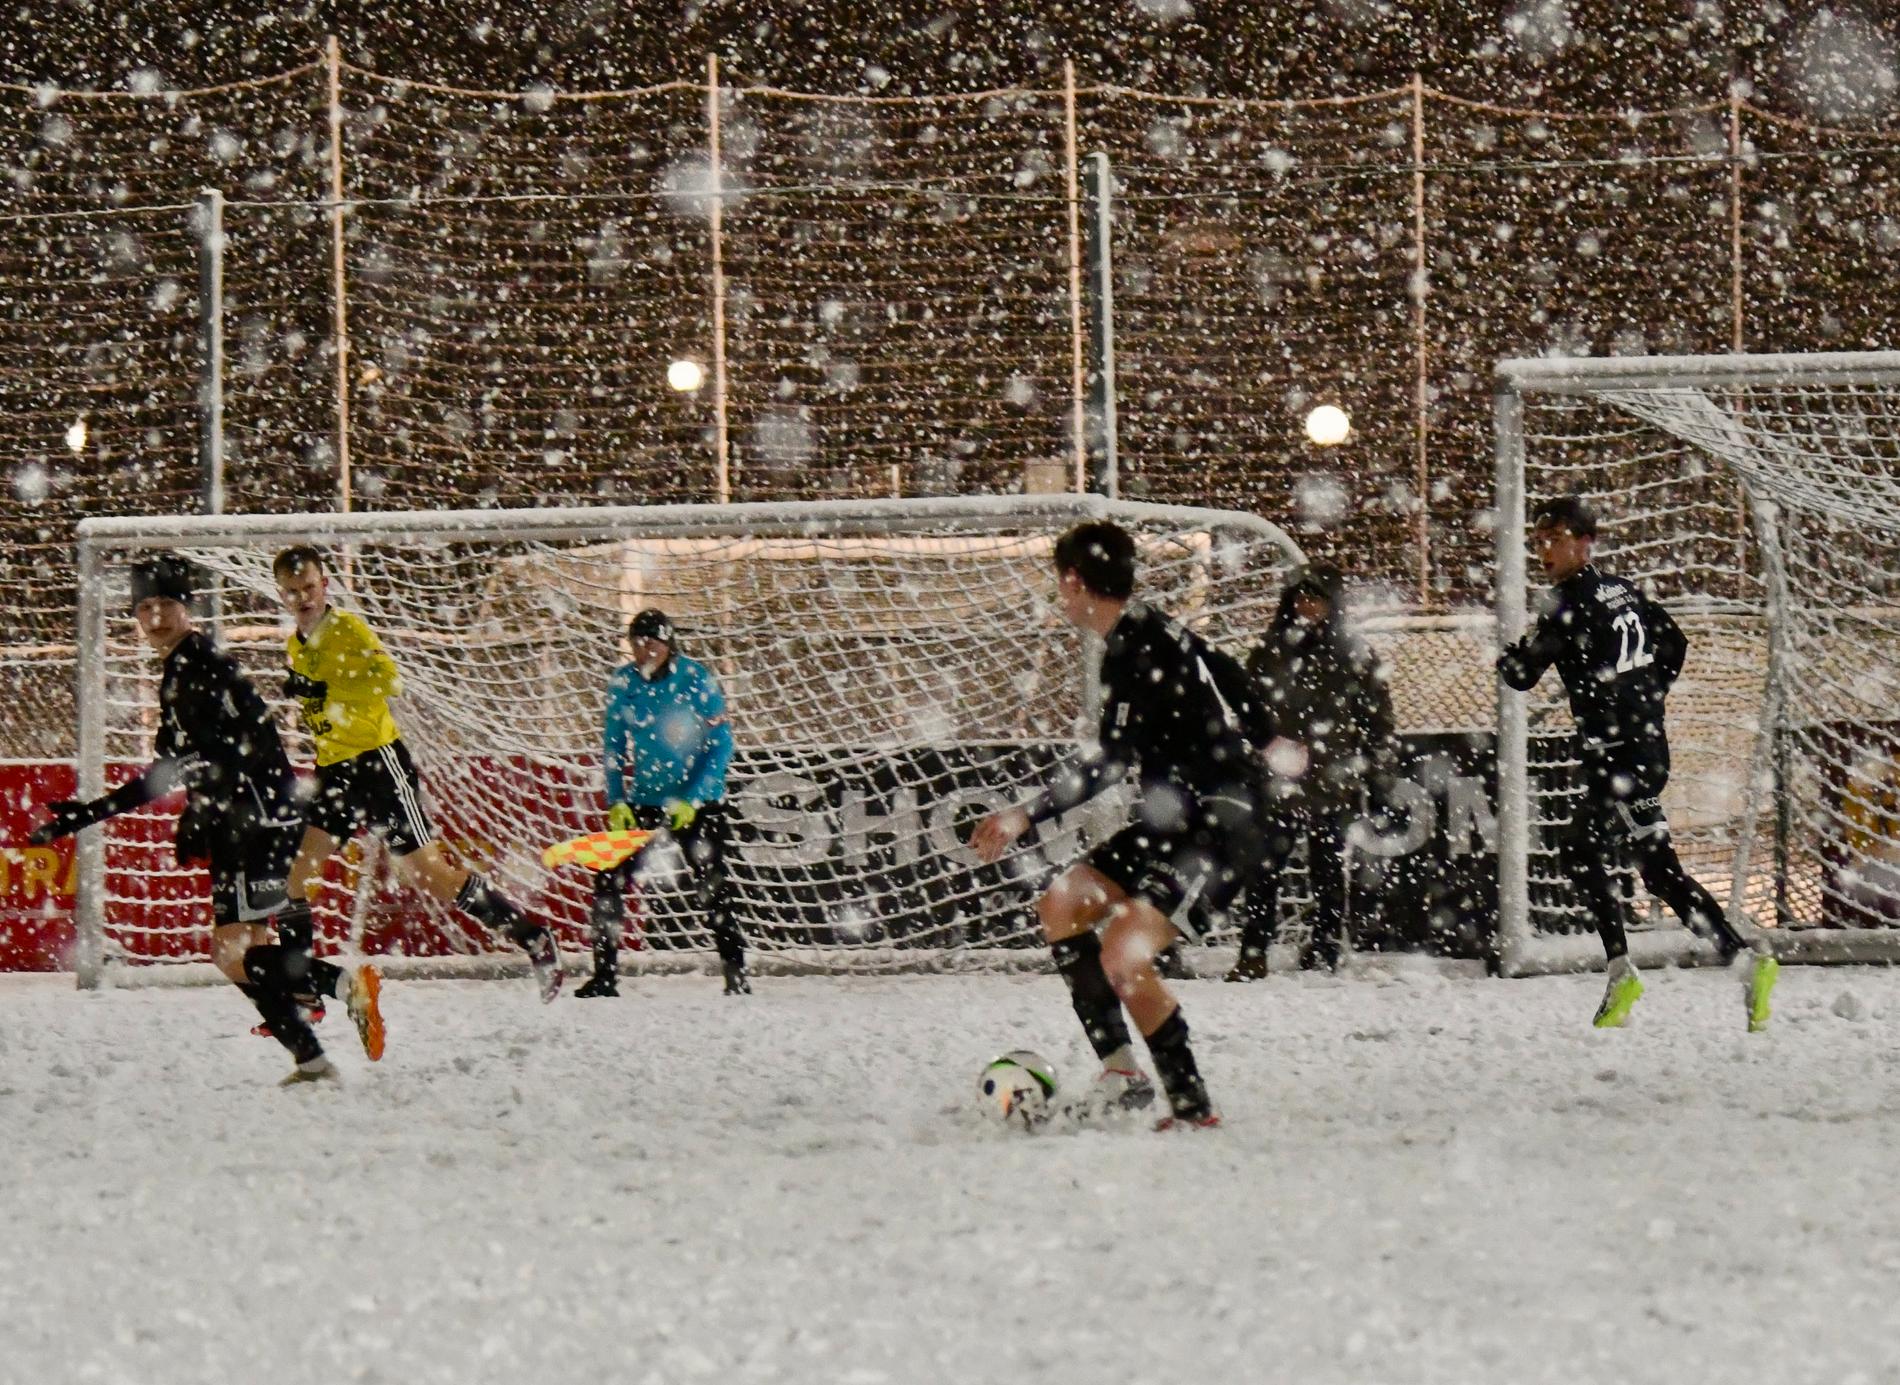 Randaberg vant 2–1 mot Sola i sesongens første treningskamp, i et forferdelig snøvær. 